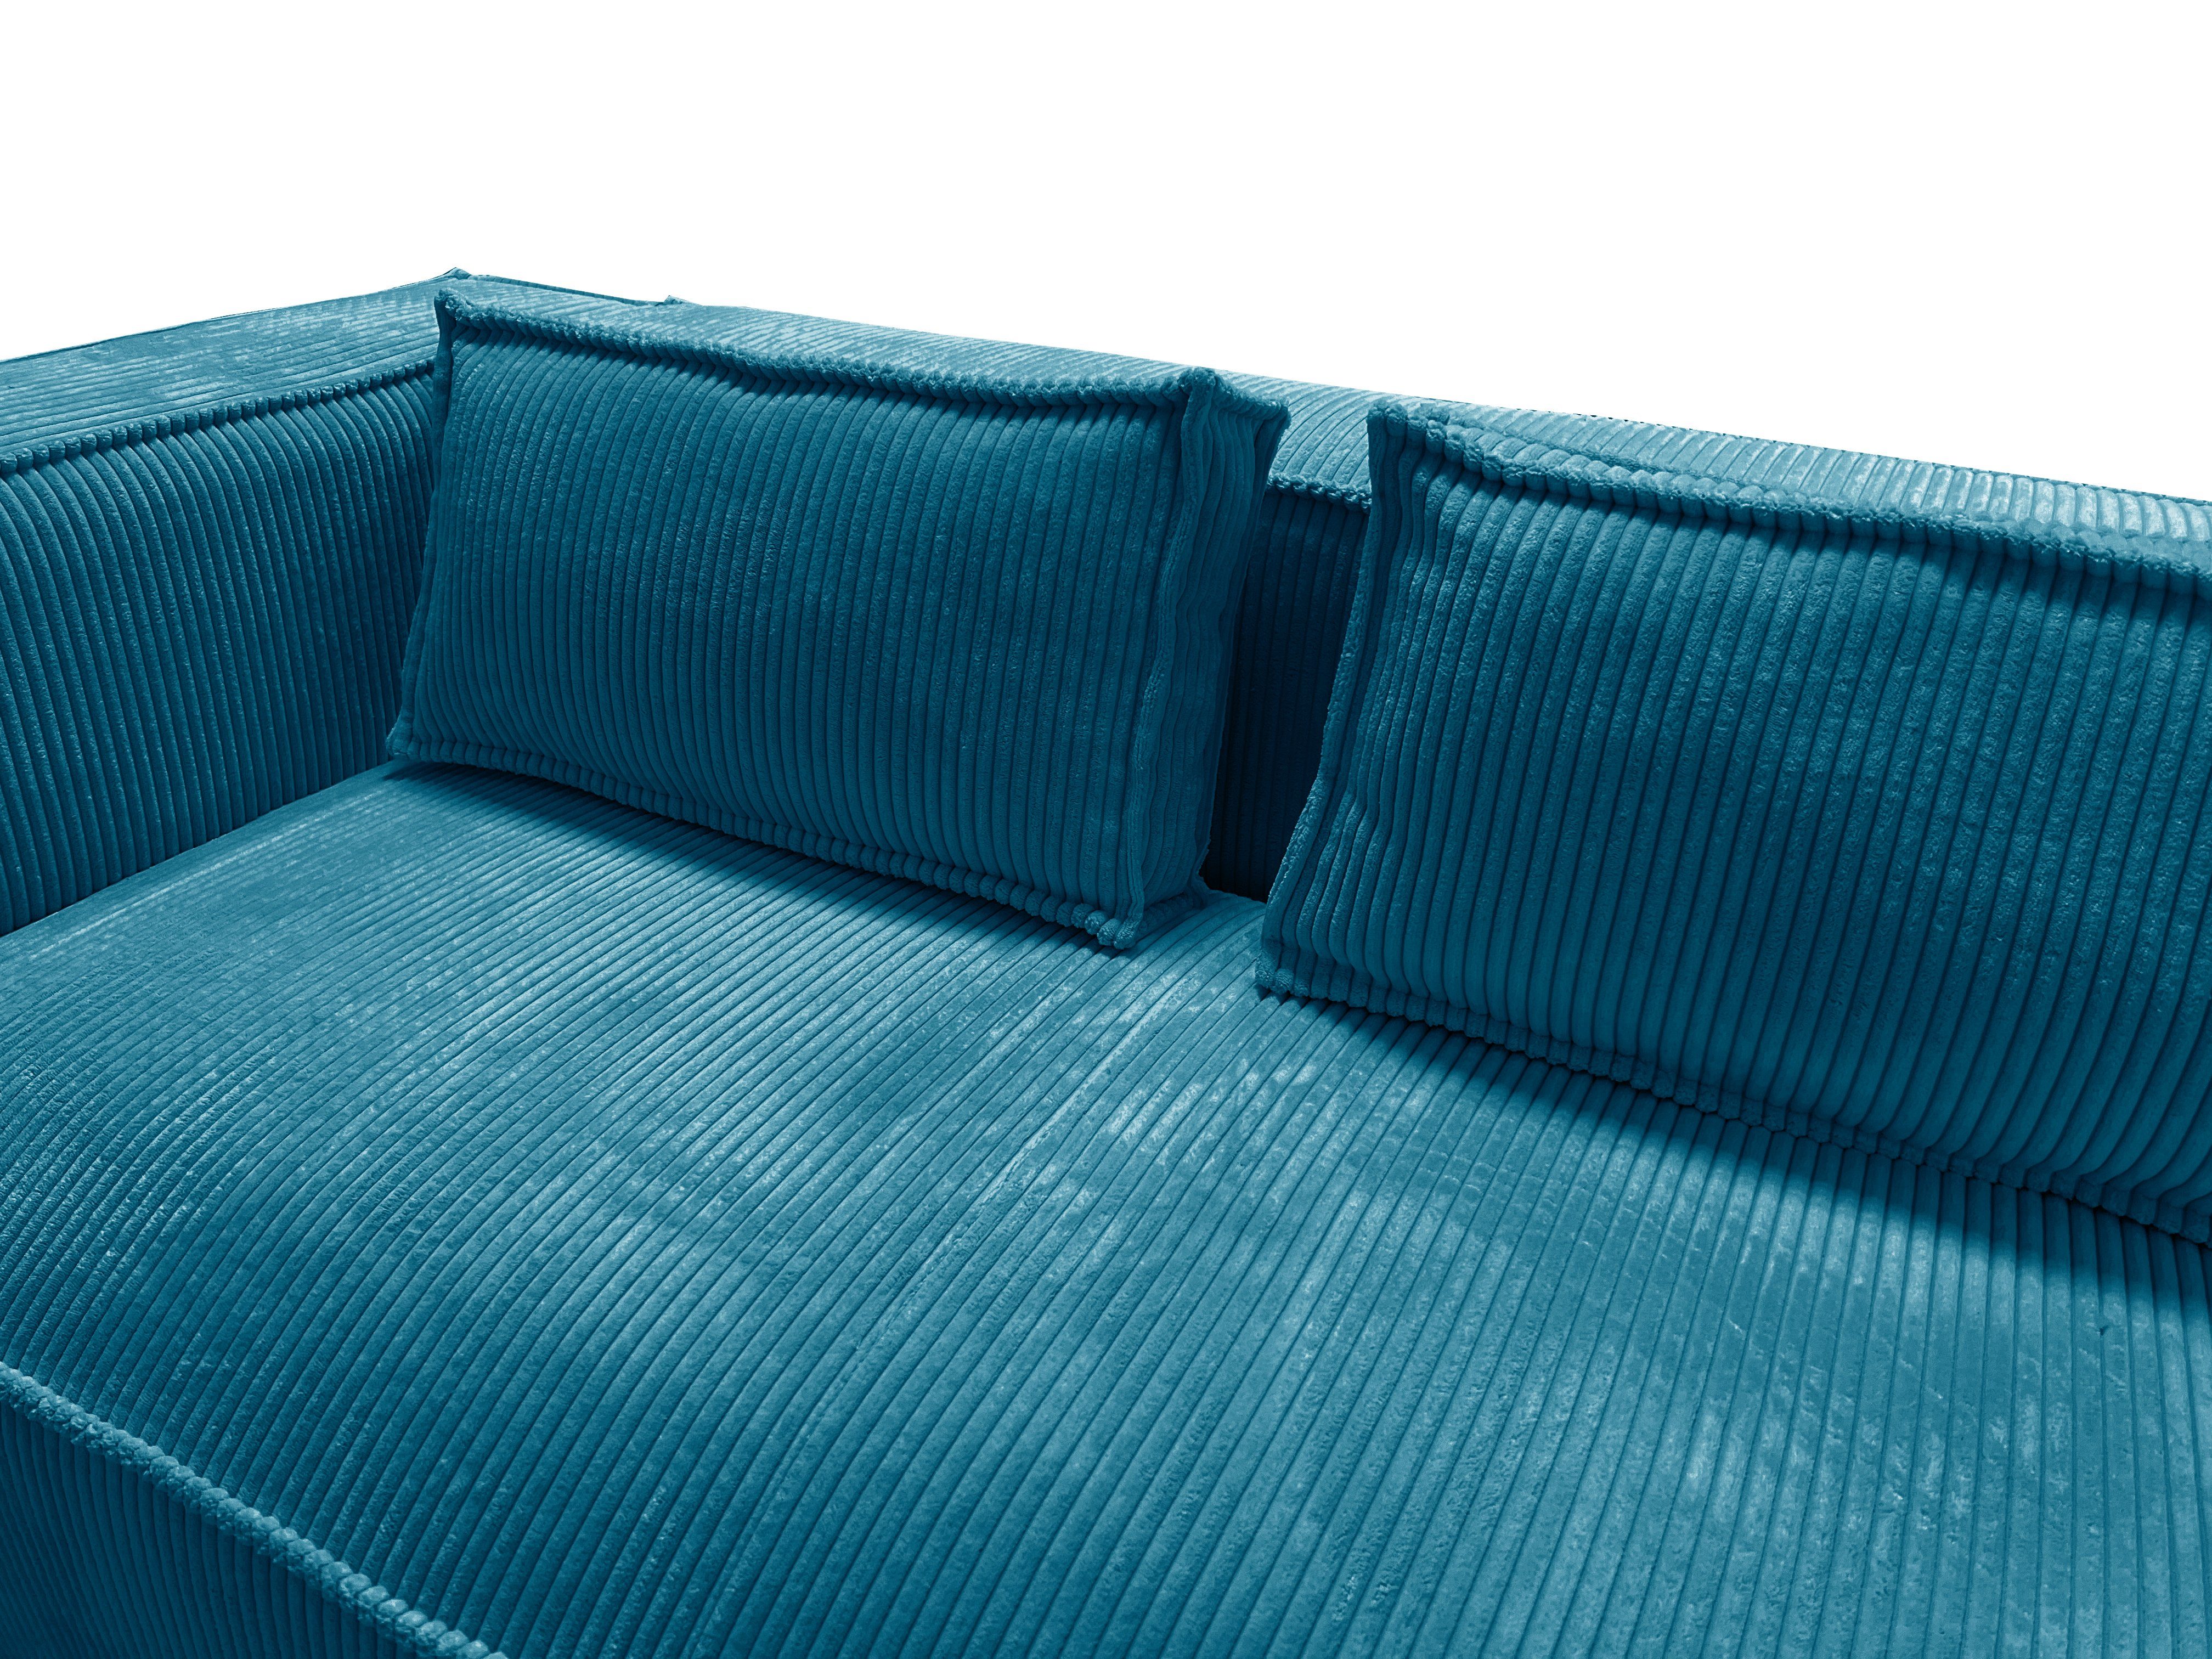 Wellenfederung Cord 3-Sitzer Renne, S-Style Möbel sofa Türkis Teile, 1 mit